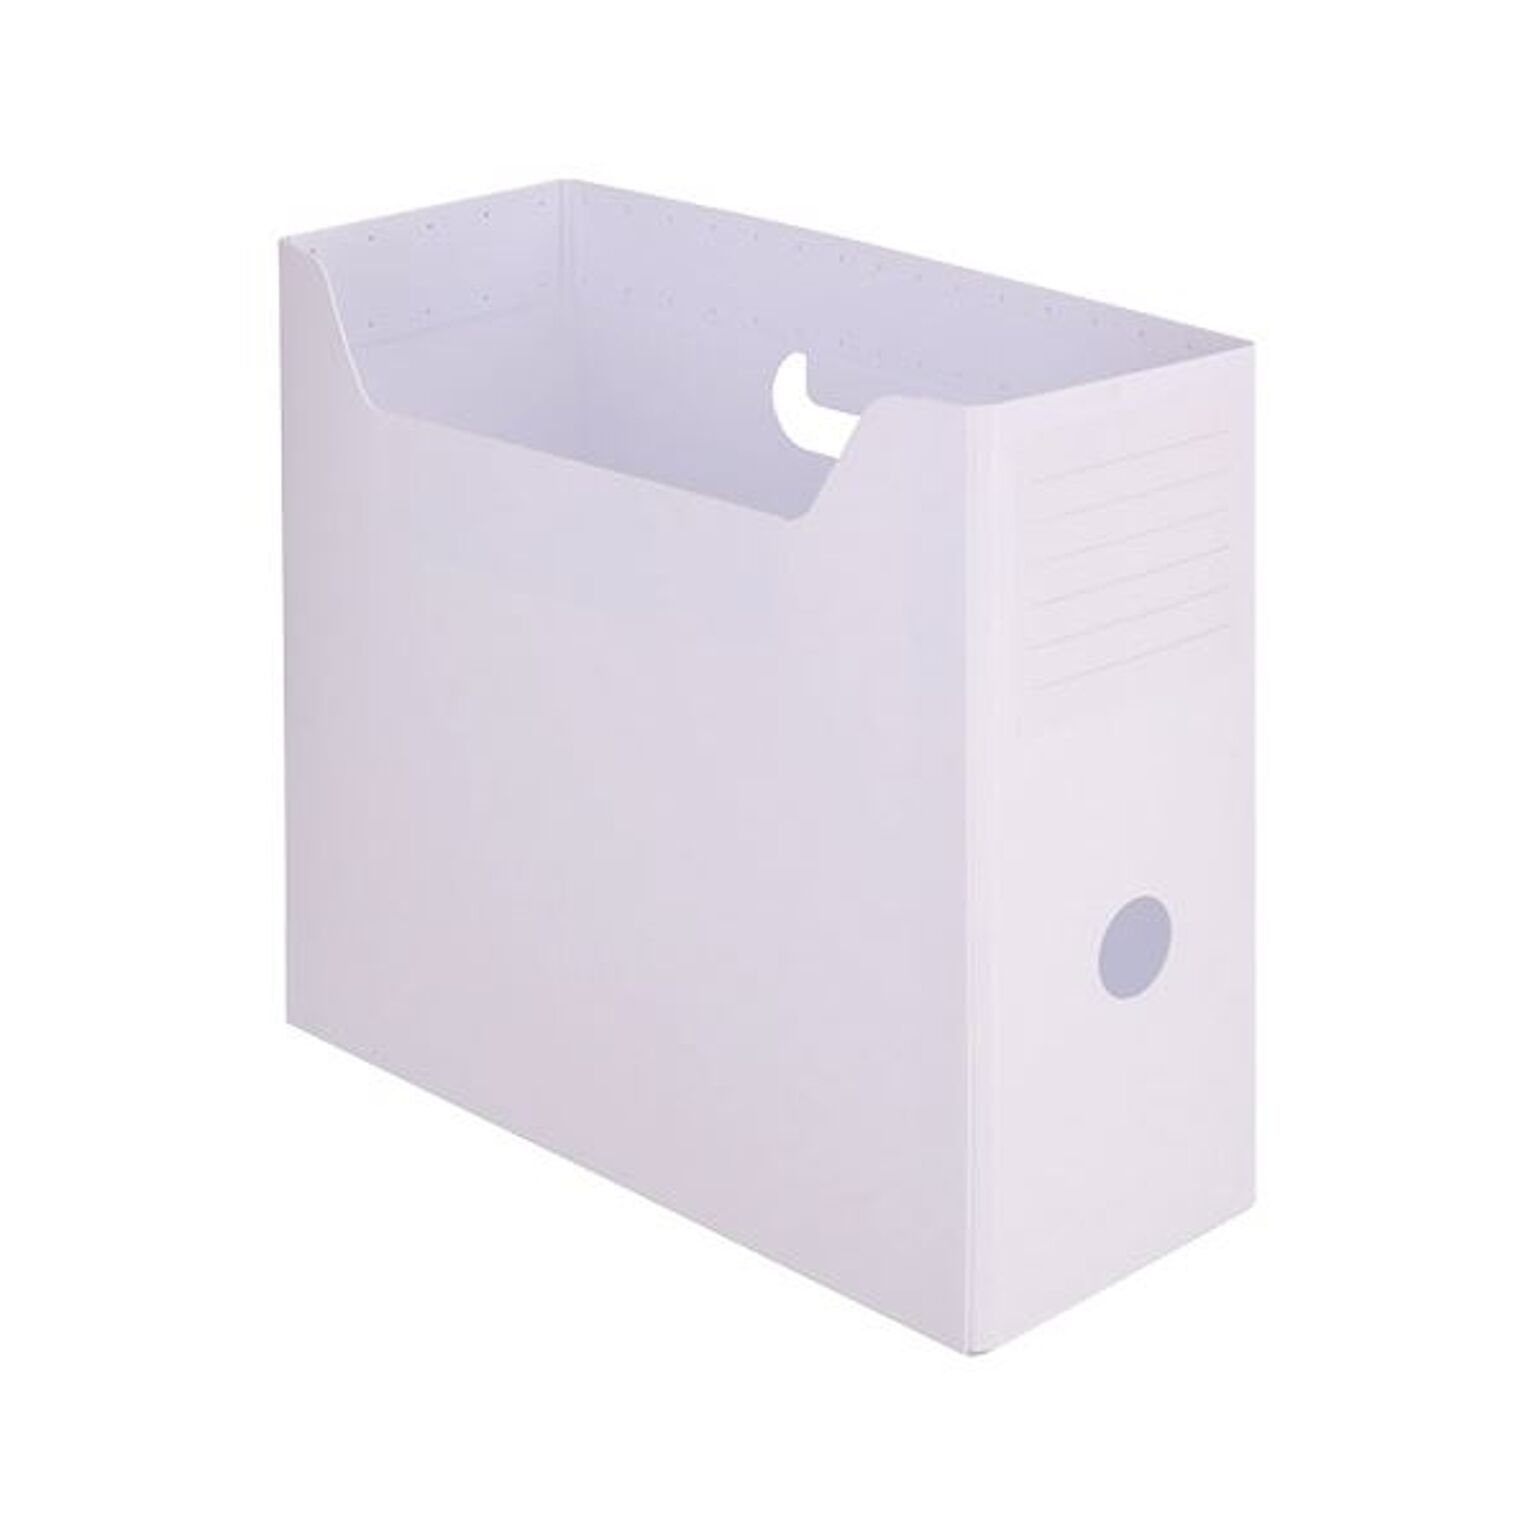 （まとめ）TANOSEEPP製ボックスファイル(組み立て式) A4ヨコ ホワイト 1個 【×30セット】